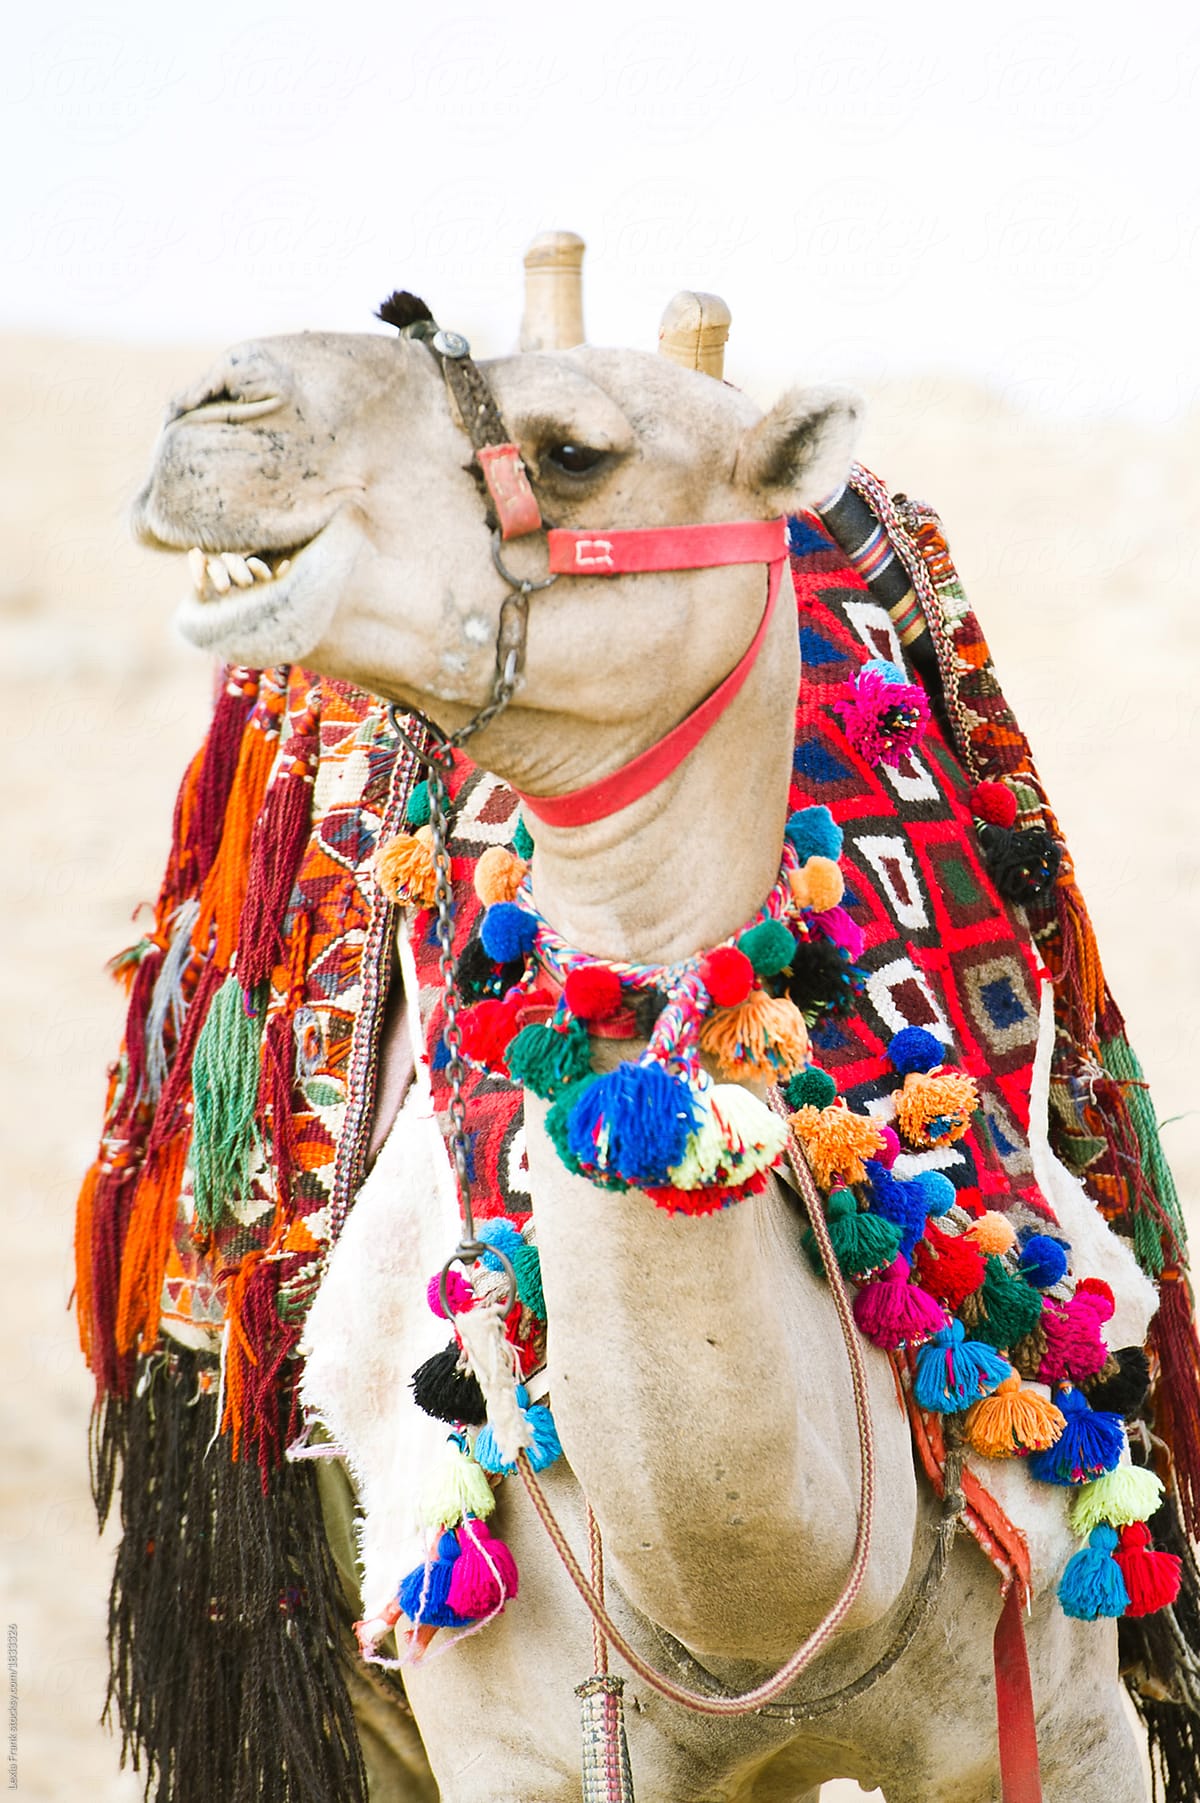 a camel in the desert in egypt